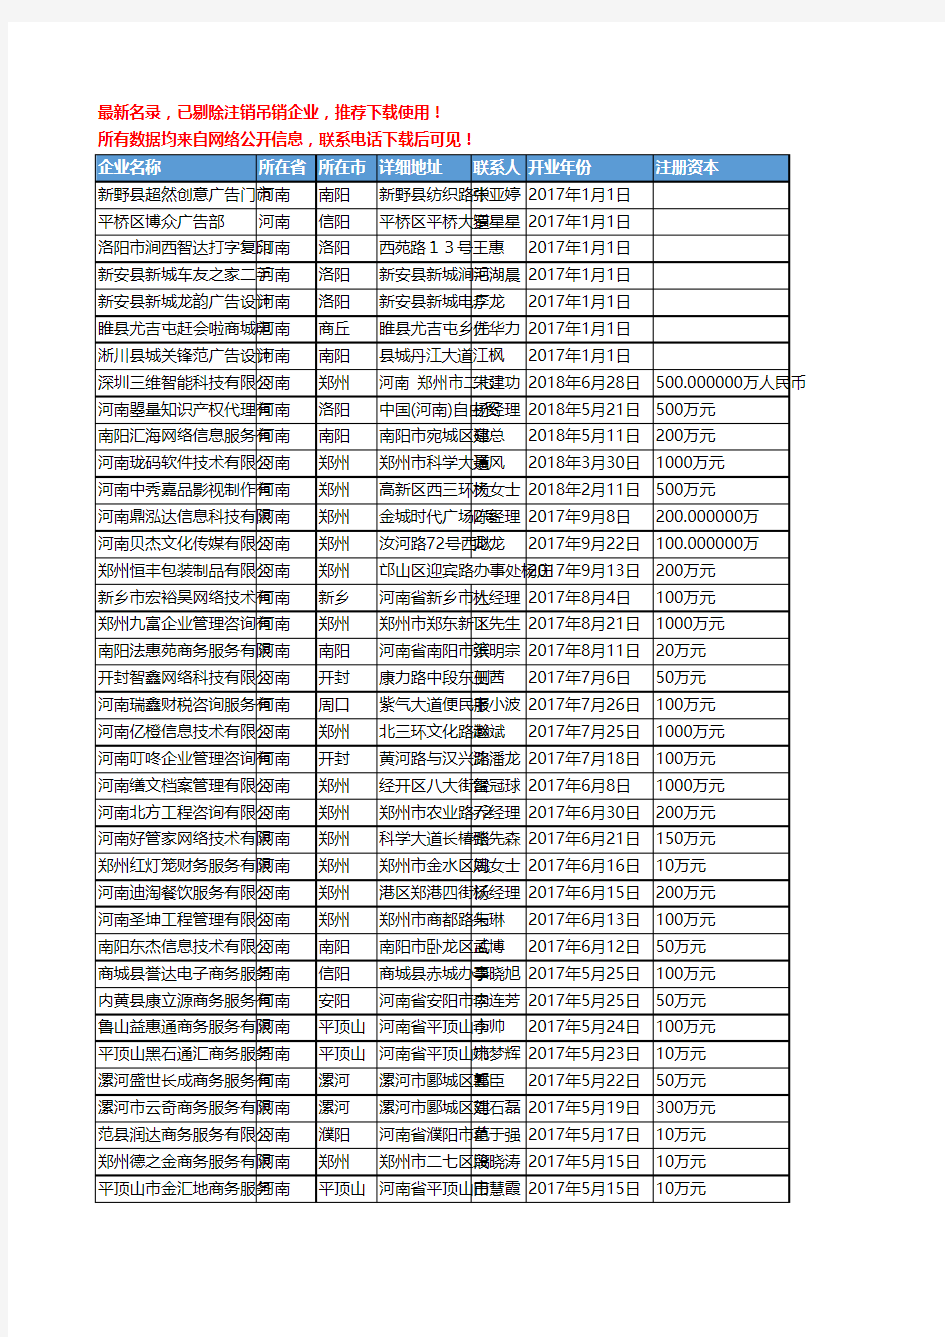 【独家数据】2018新版河南省商务服务工商企业名录黄页大全6175家